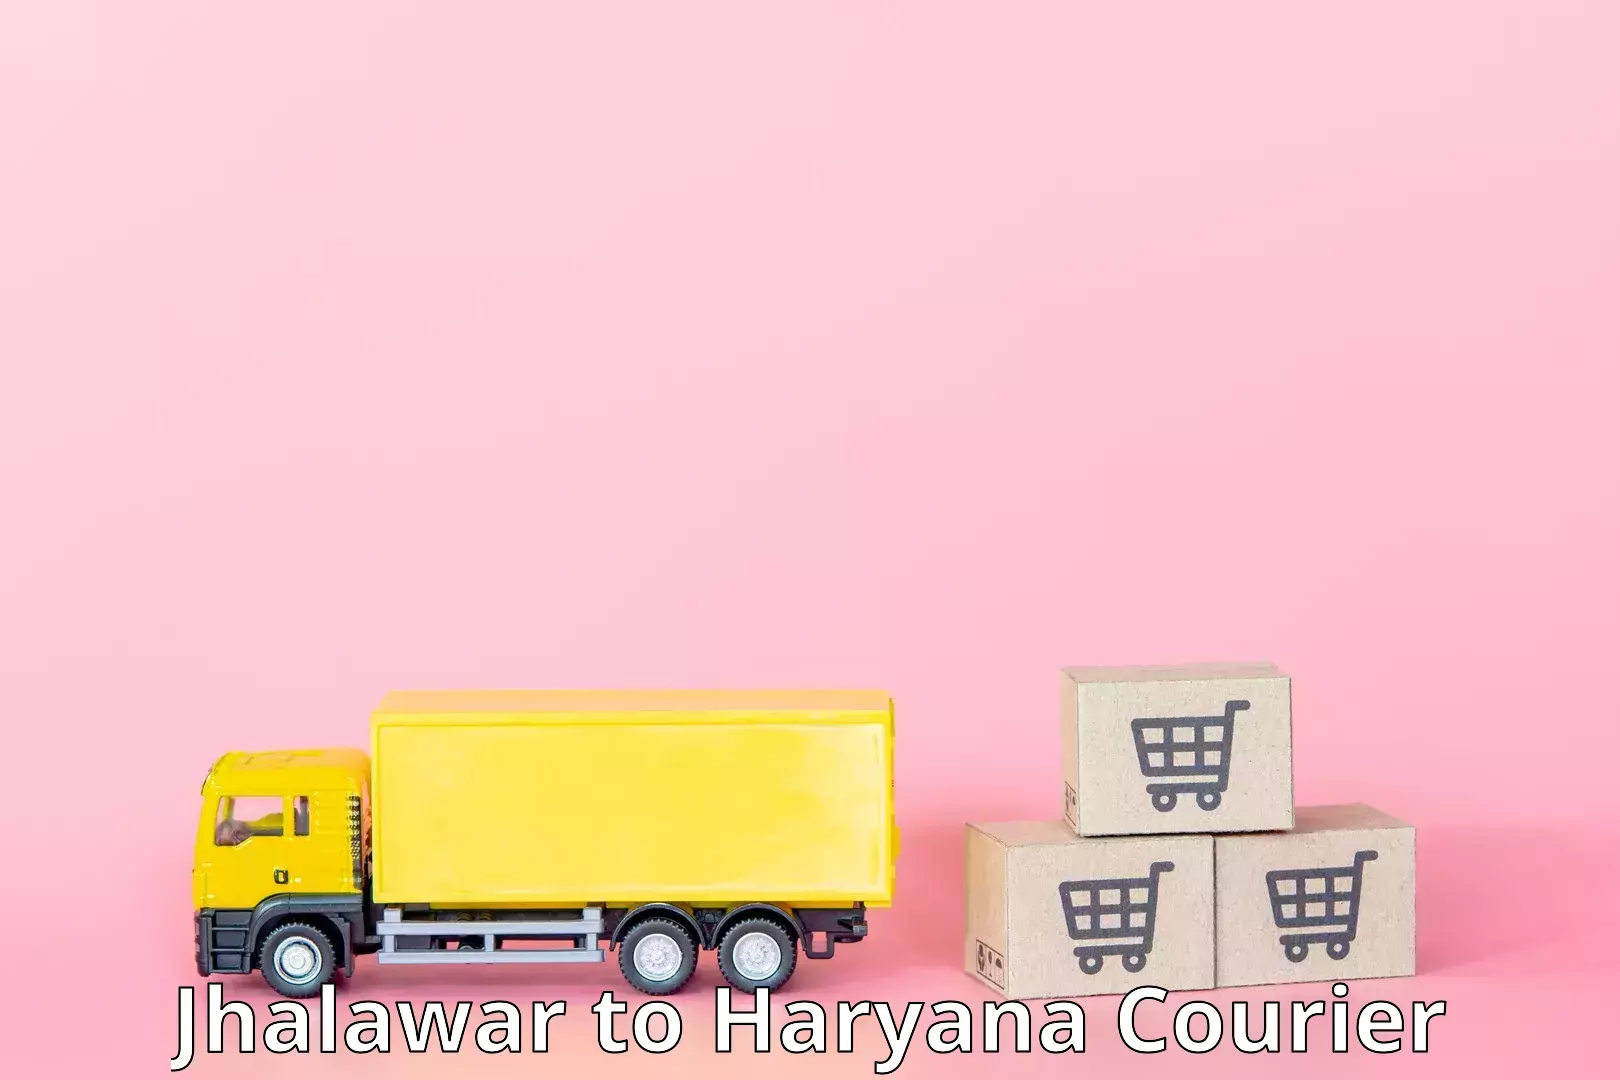 Retail shipping solutions Jhalawar to Chaudhary Charan Singh Haryana Agricultural University Hisar